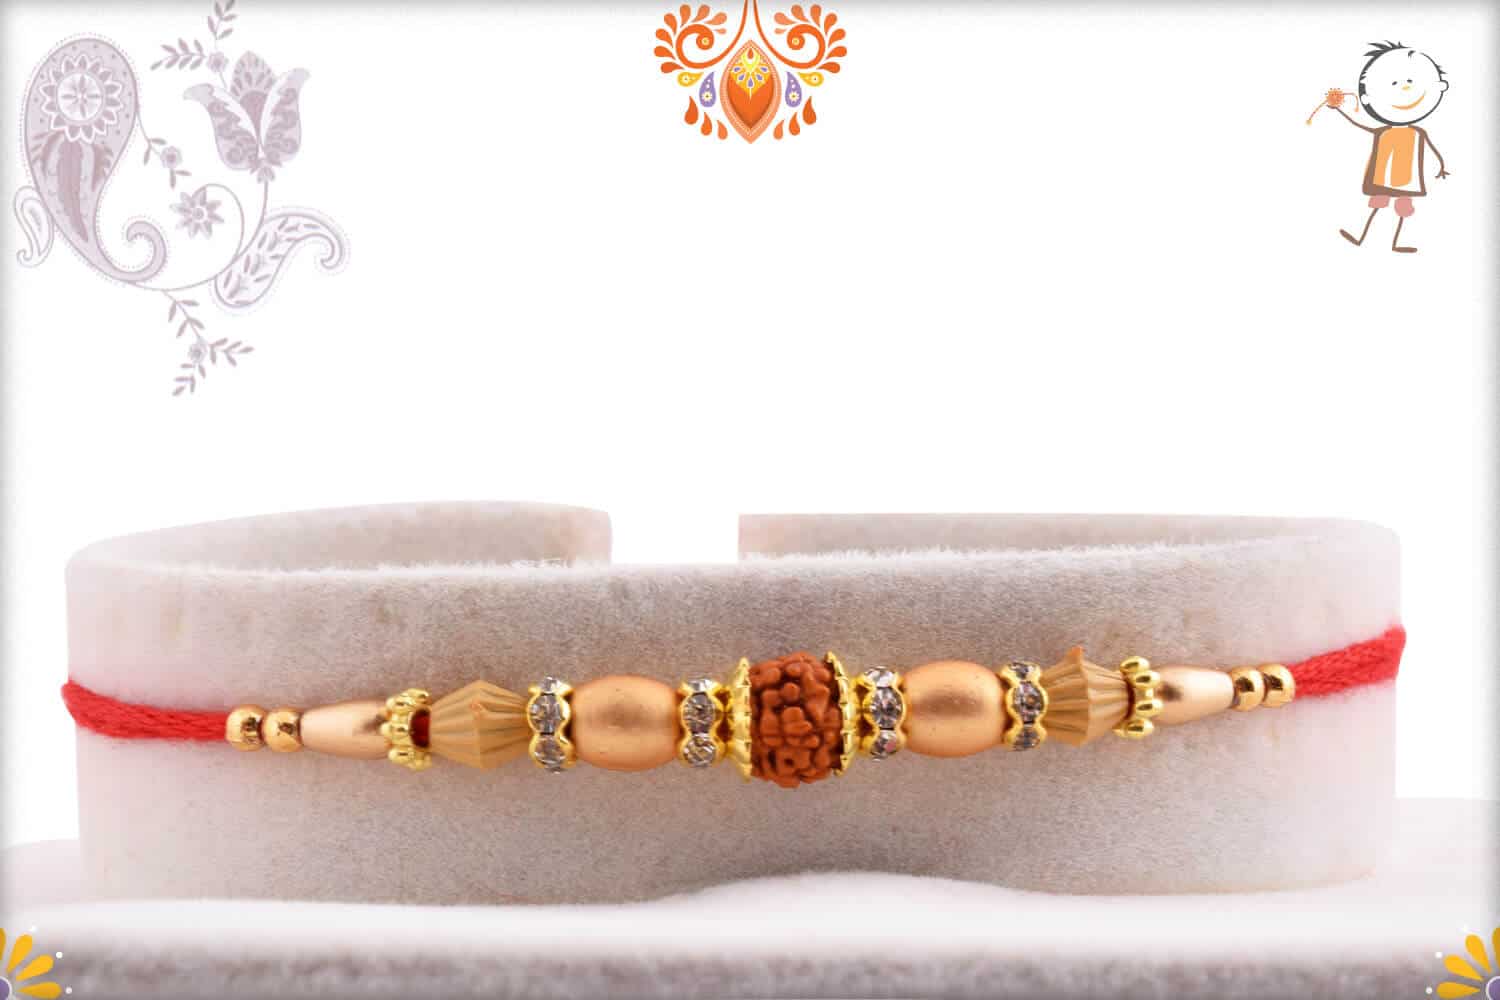 Single Rudraksh Rakhi with Red-Rose Beads | Send Rakhi Gifts Online 1